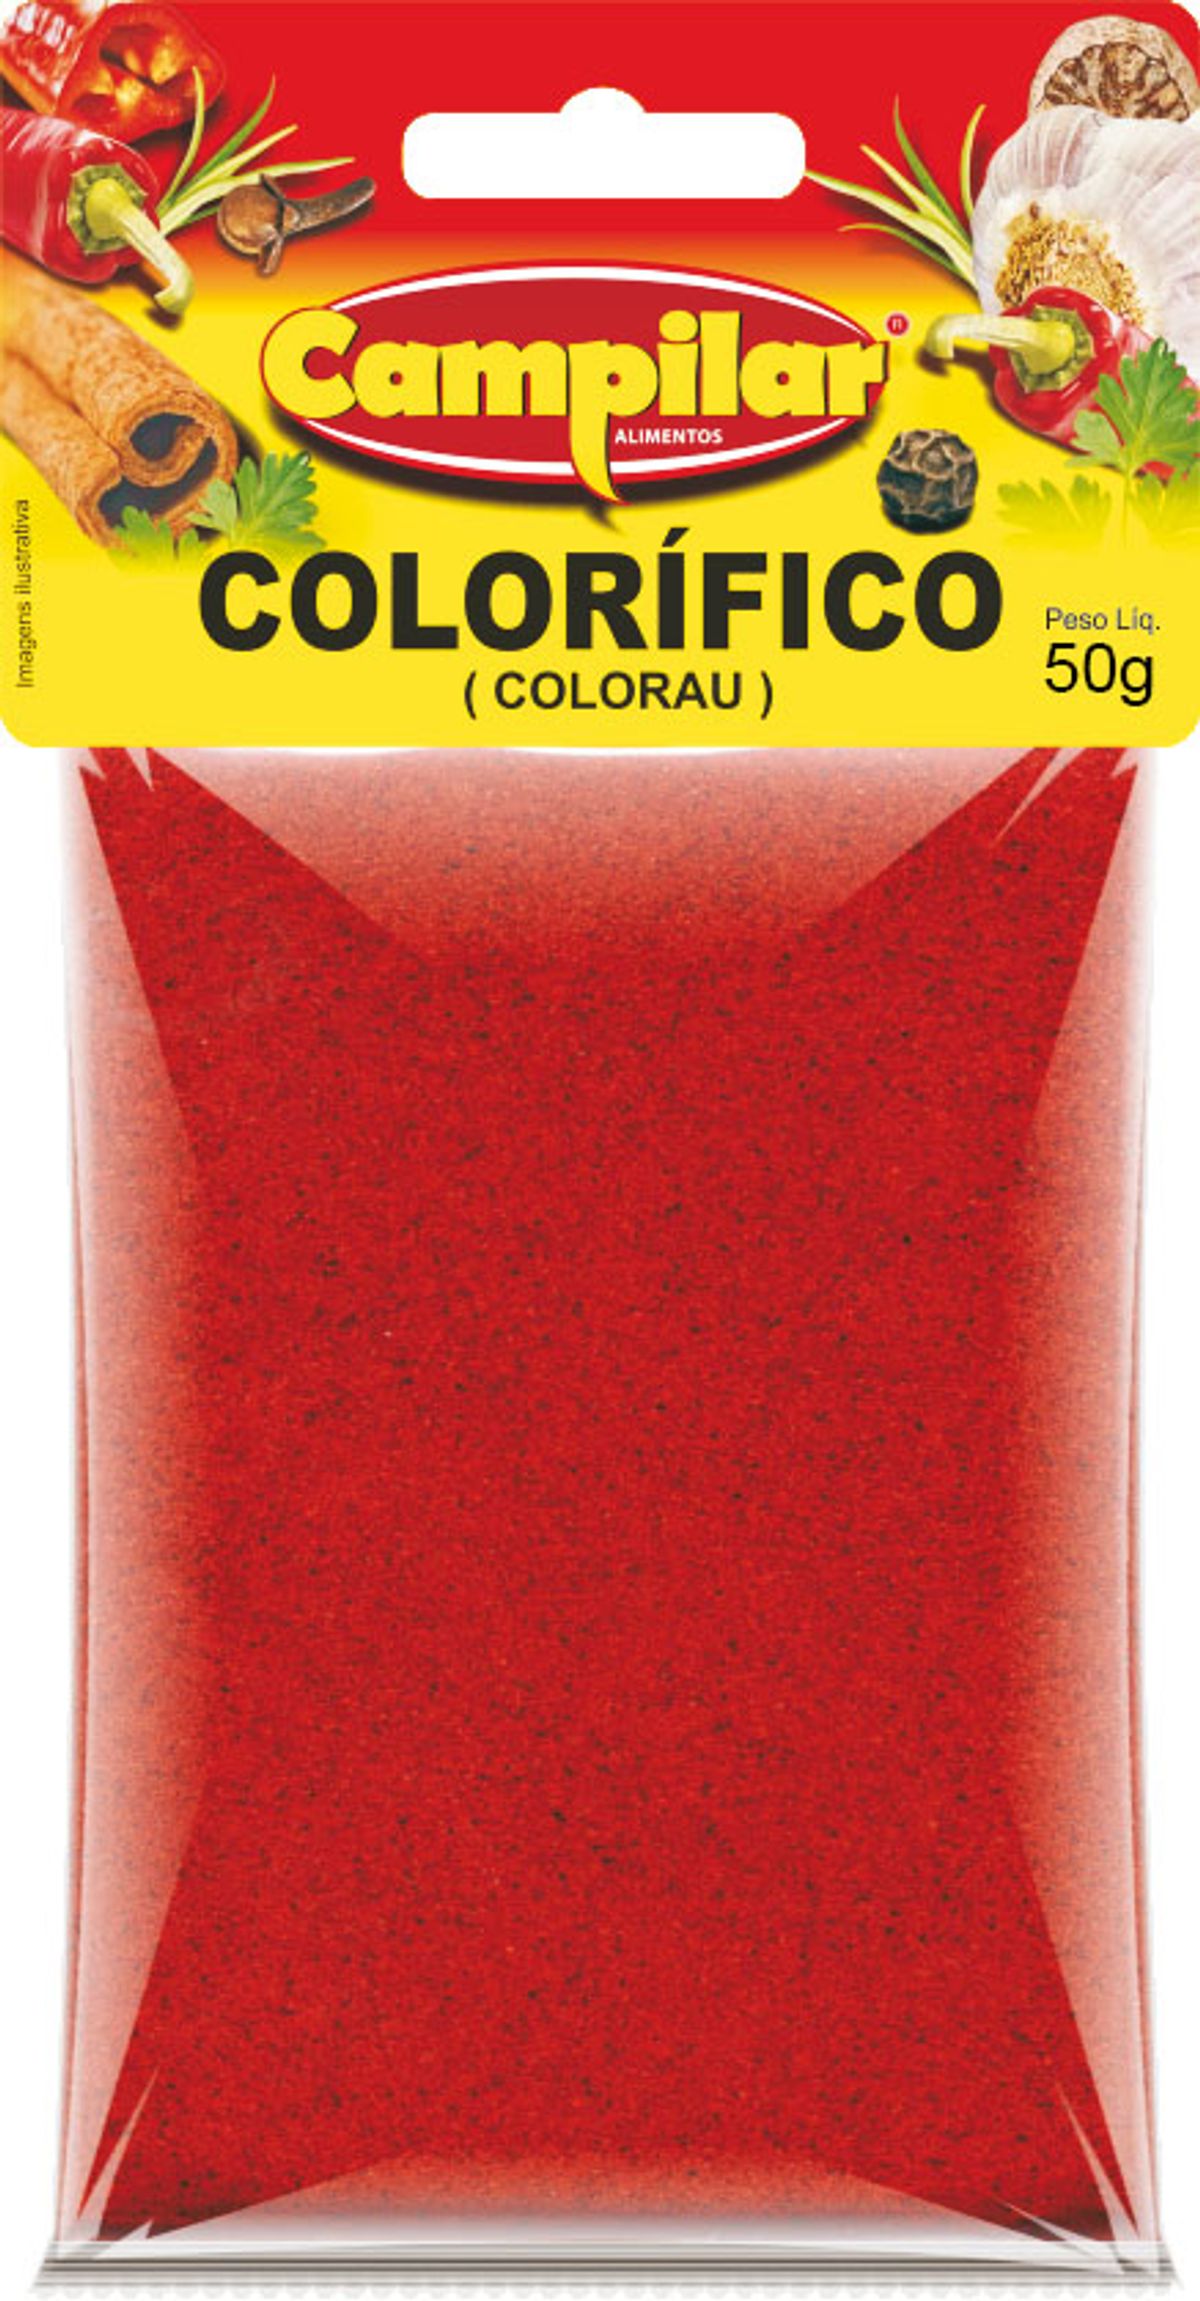 Colorífico Campilar Colorau 50g image number 0